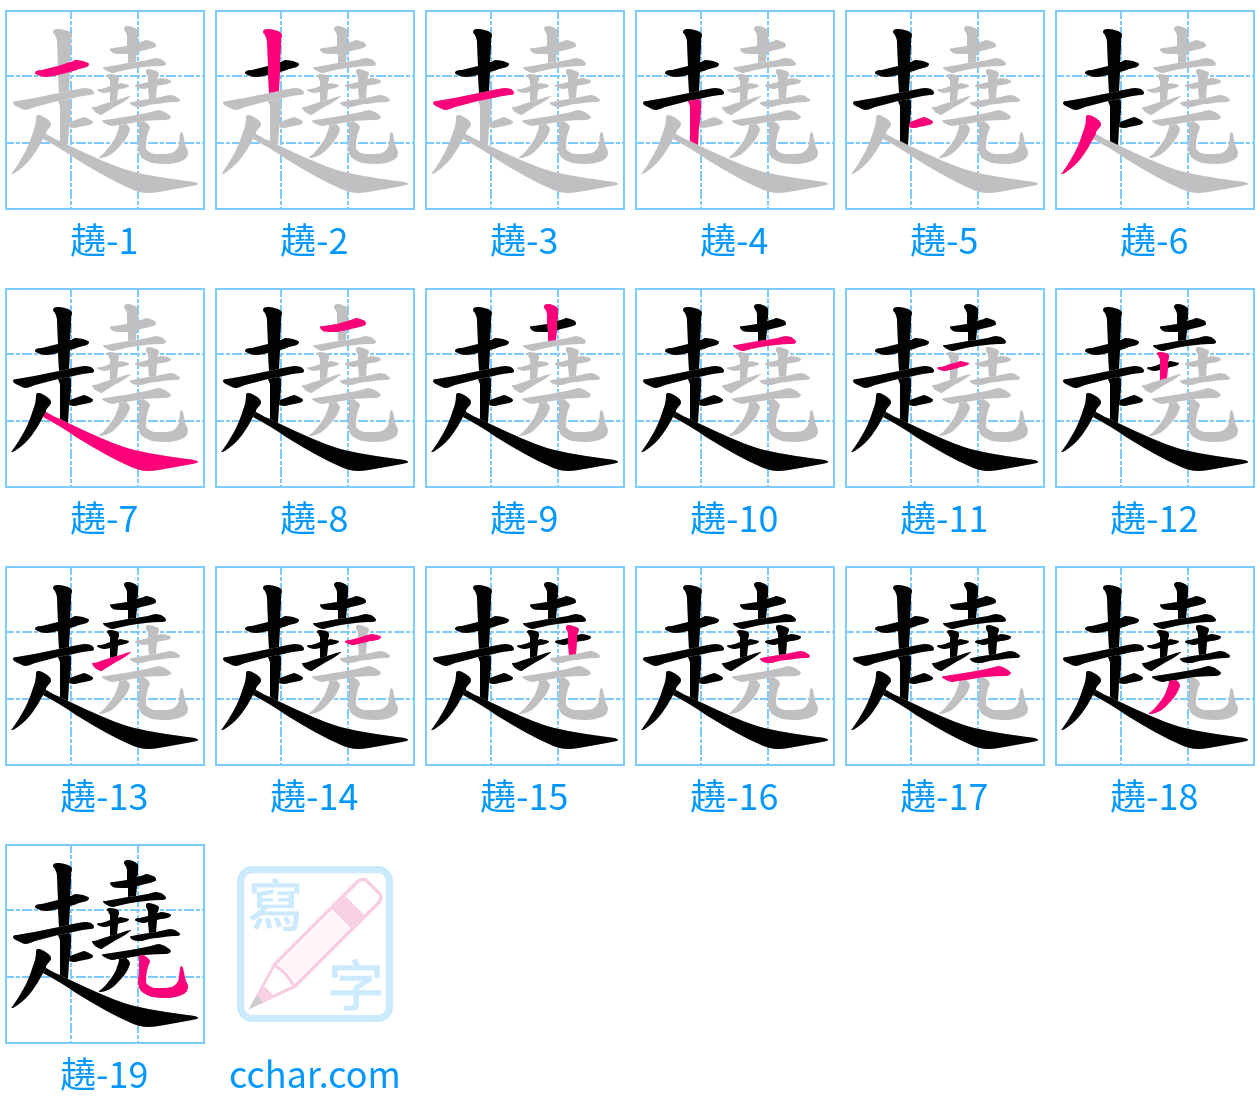 趬 stroke order step-by-step diagram